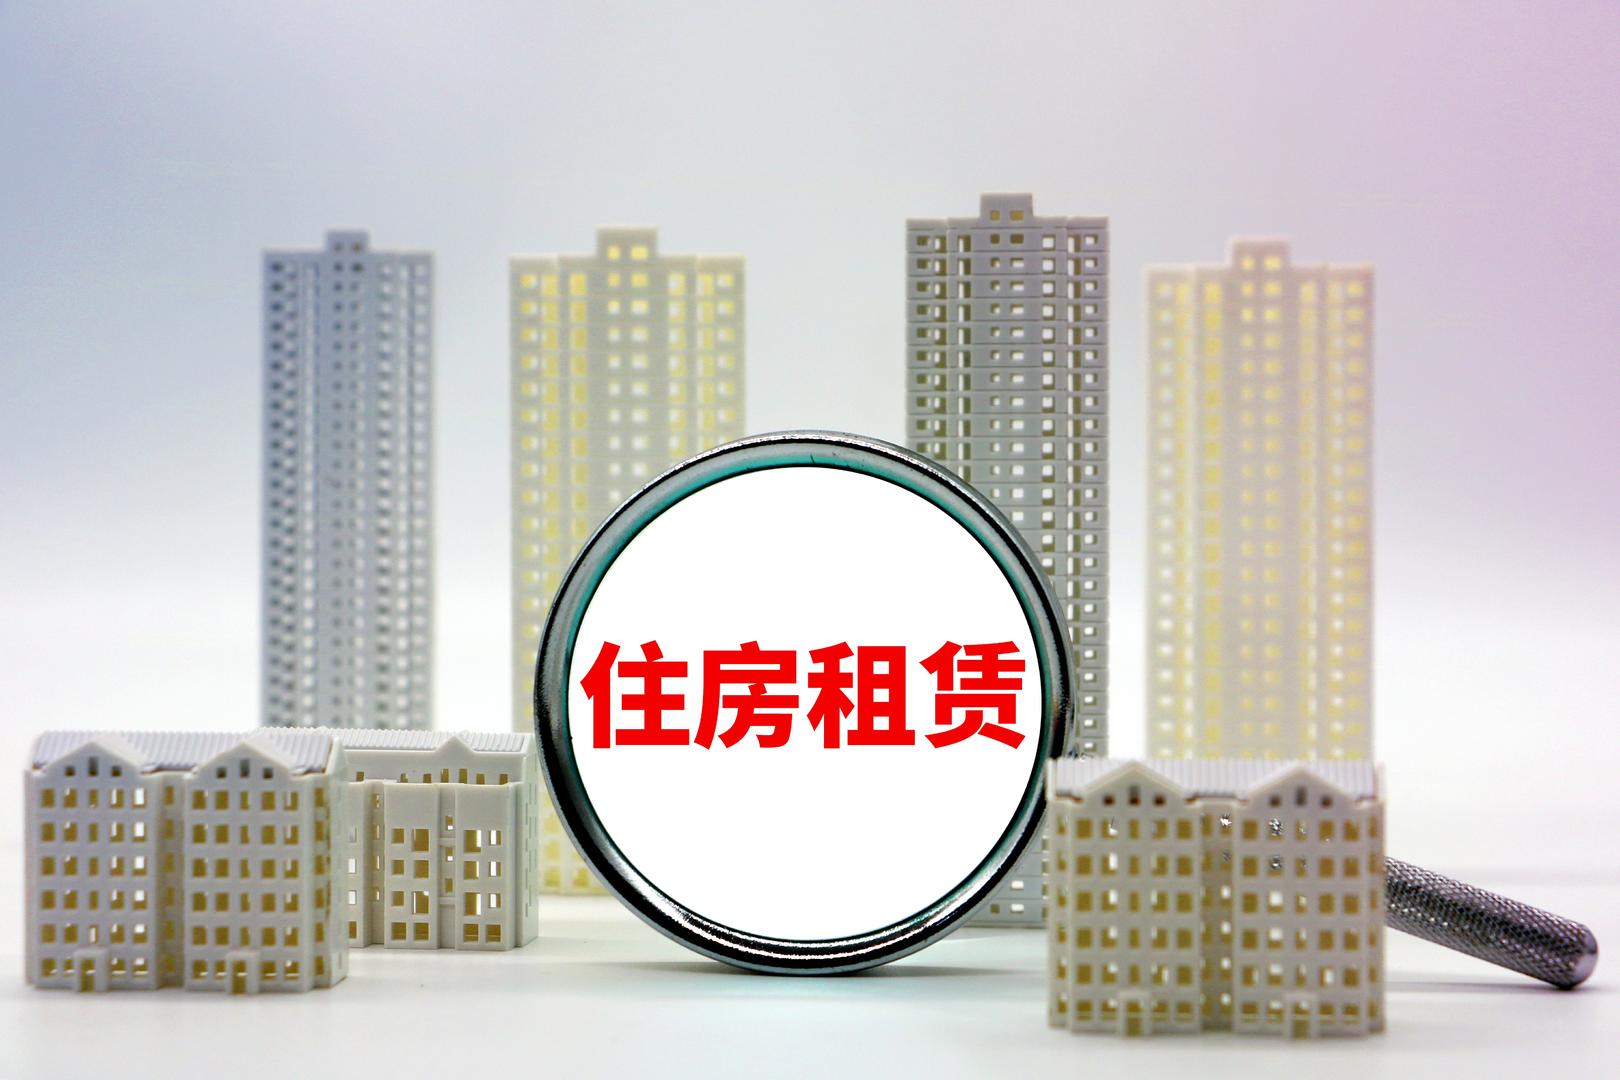 上海立法明确“禁止群租”,监管“二房东”!中介称不会铤而走险